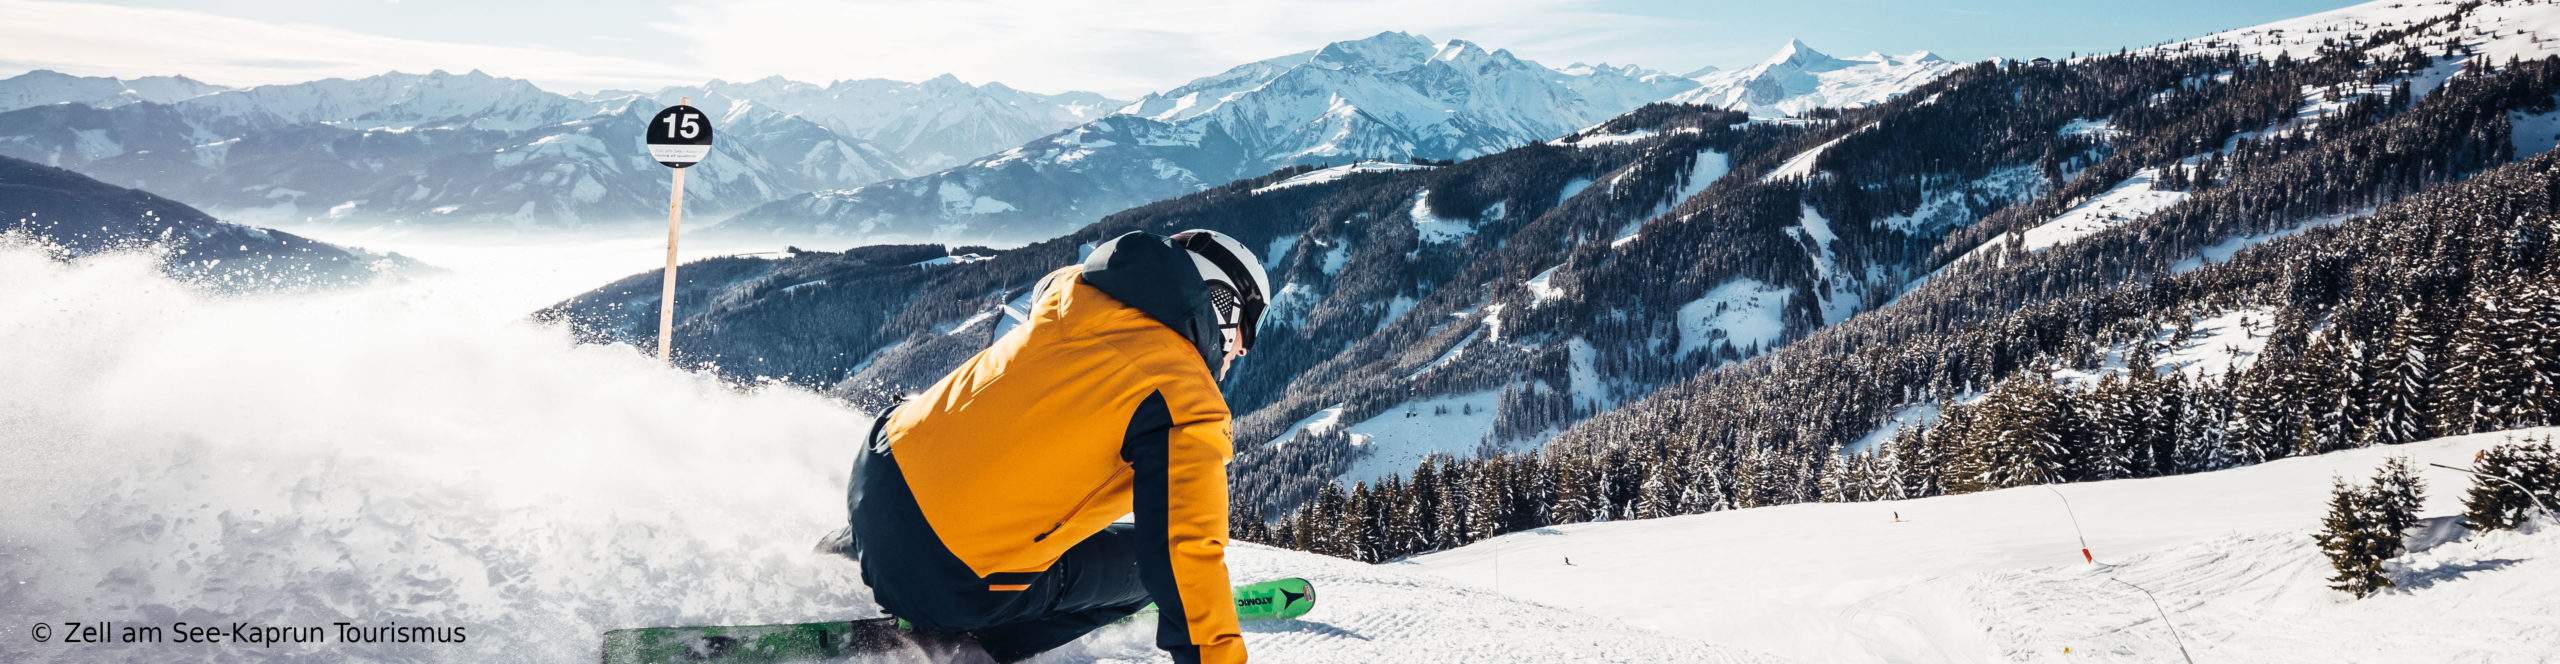 KAPRUN – ZELL AM SEE – Skireise mit Schneegarantie – 3 Sterne Hotel Schritte von der Gondel – Wellness über den Wolken – Sonntag bis Mittwoch 